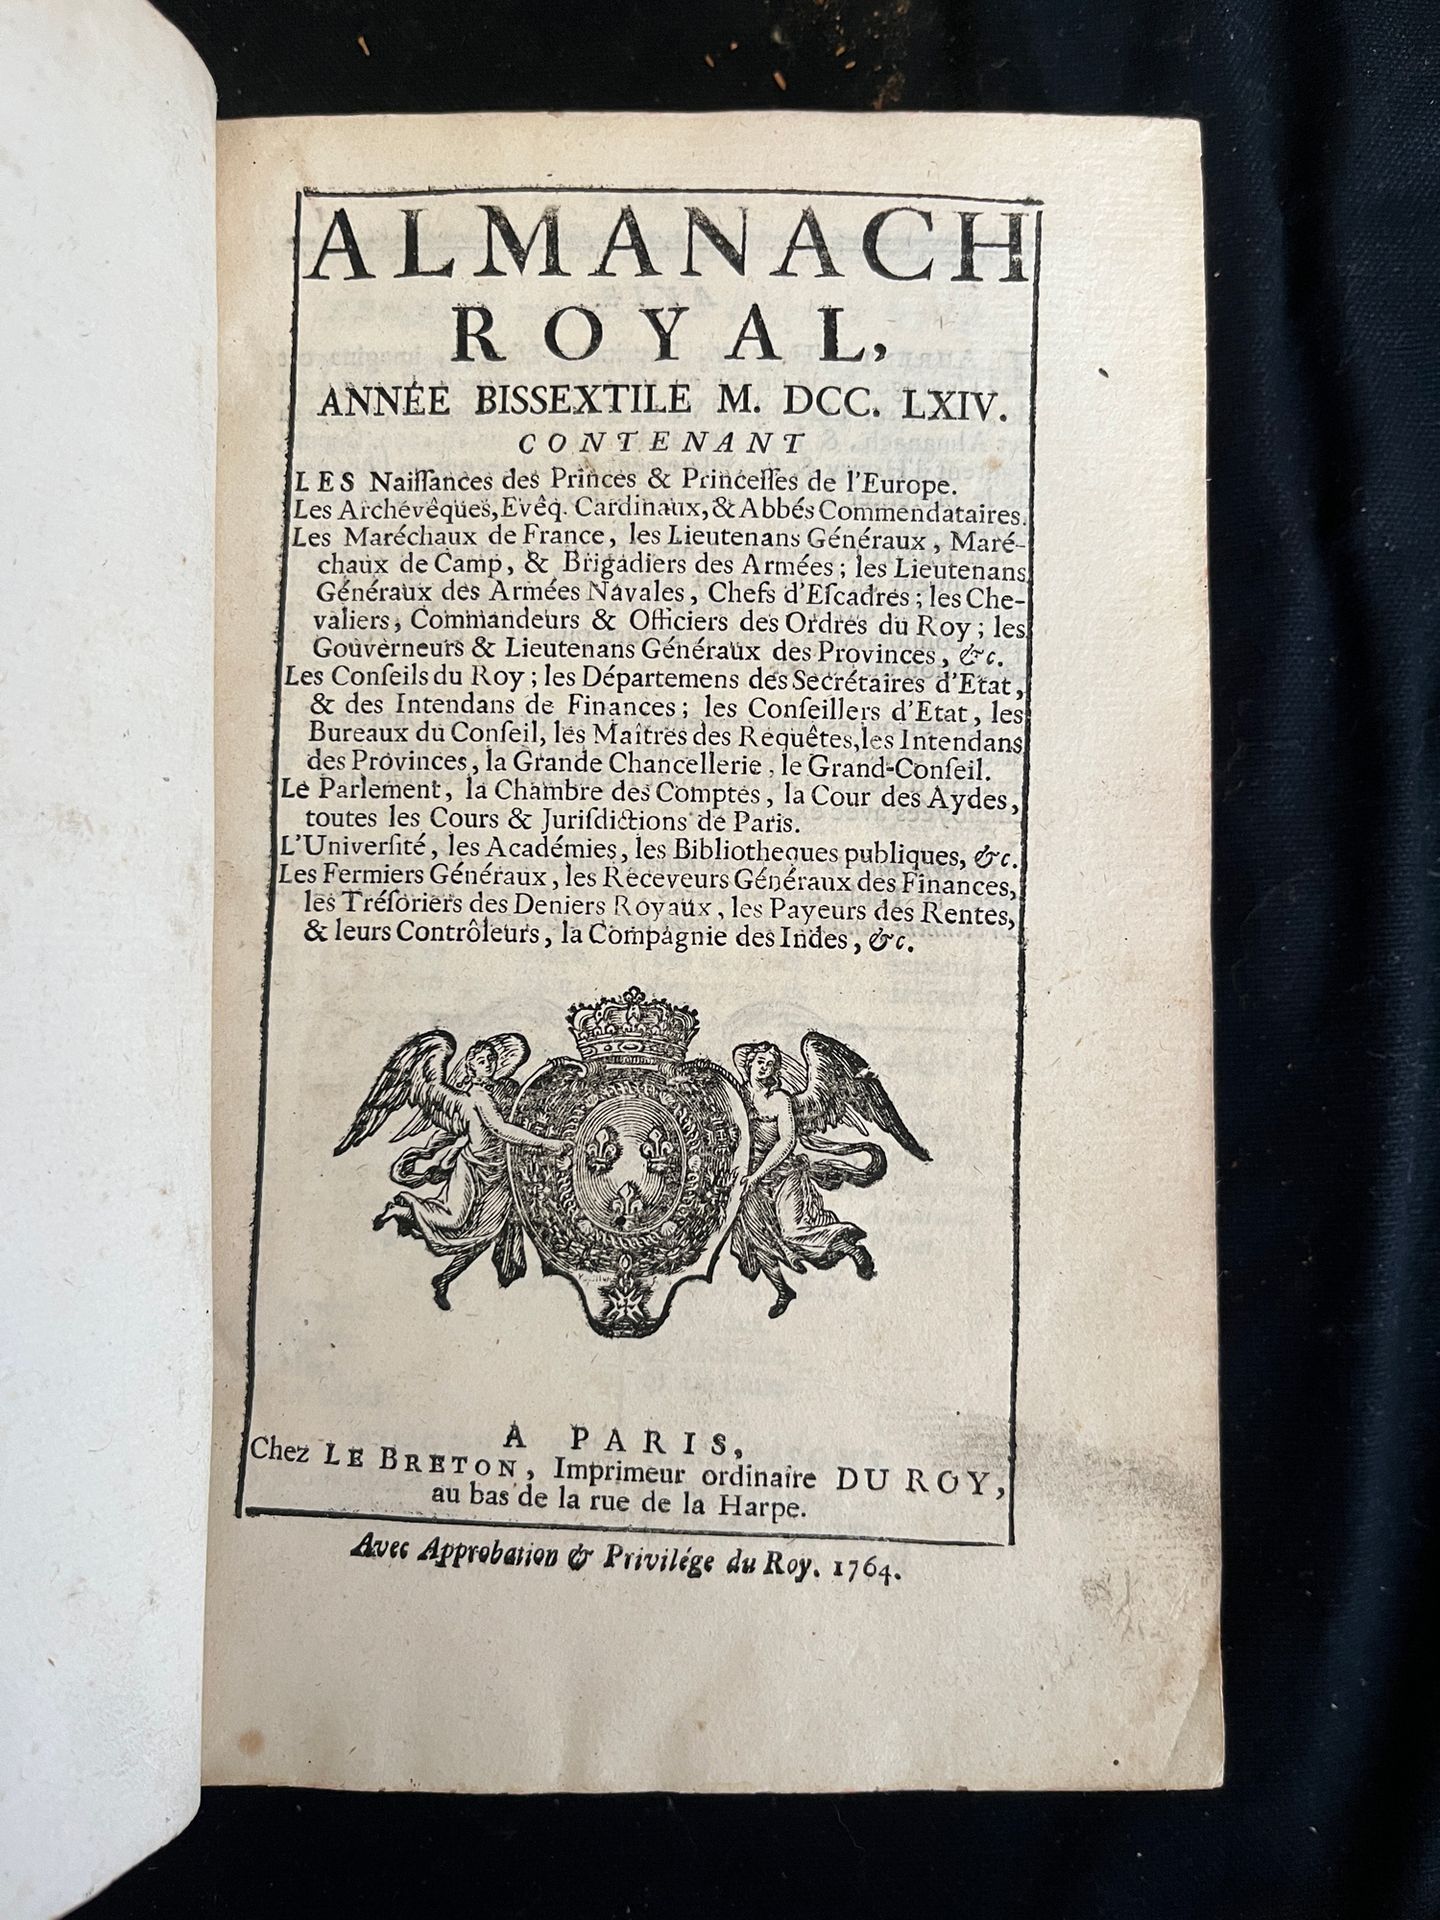 Null [ALMANACH]
Almanach royal pour l'an bissextile MDCCLXIV. Paris, chez Le Bre&hellip;